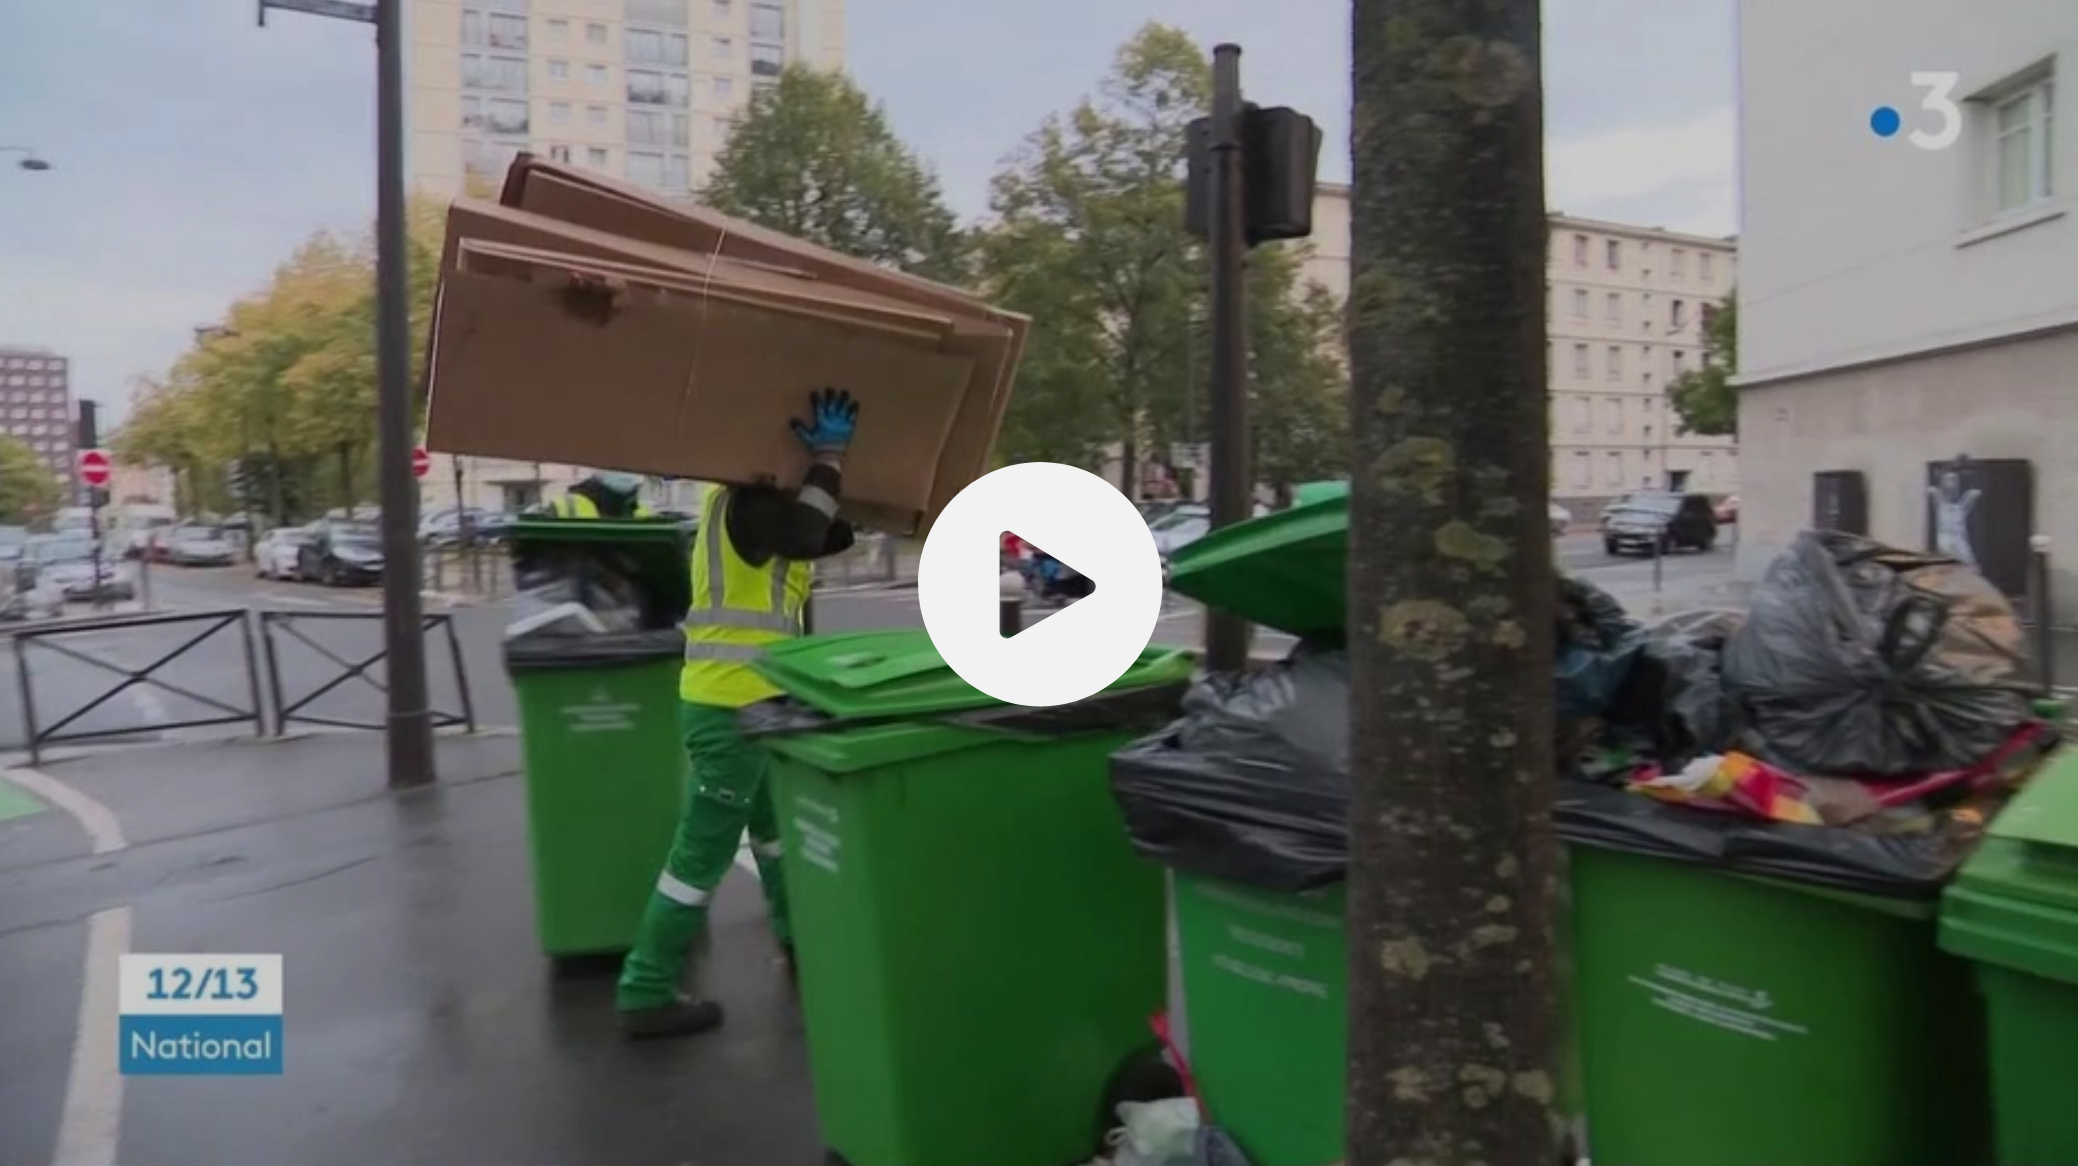 Saleté : la Ville de Paris dénoncée sur les réseaux sociaux (VIDÉO)